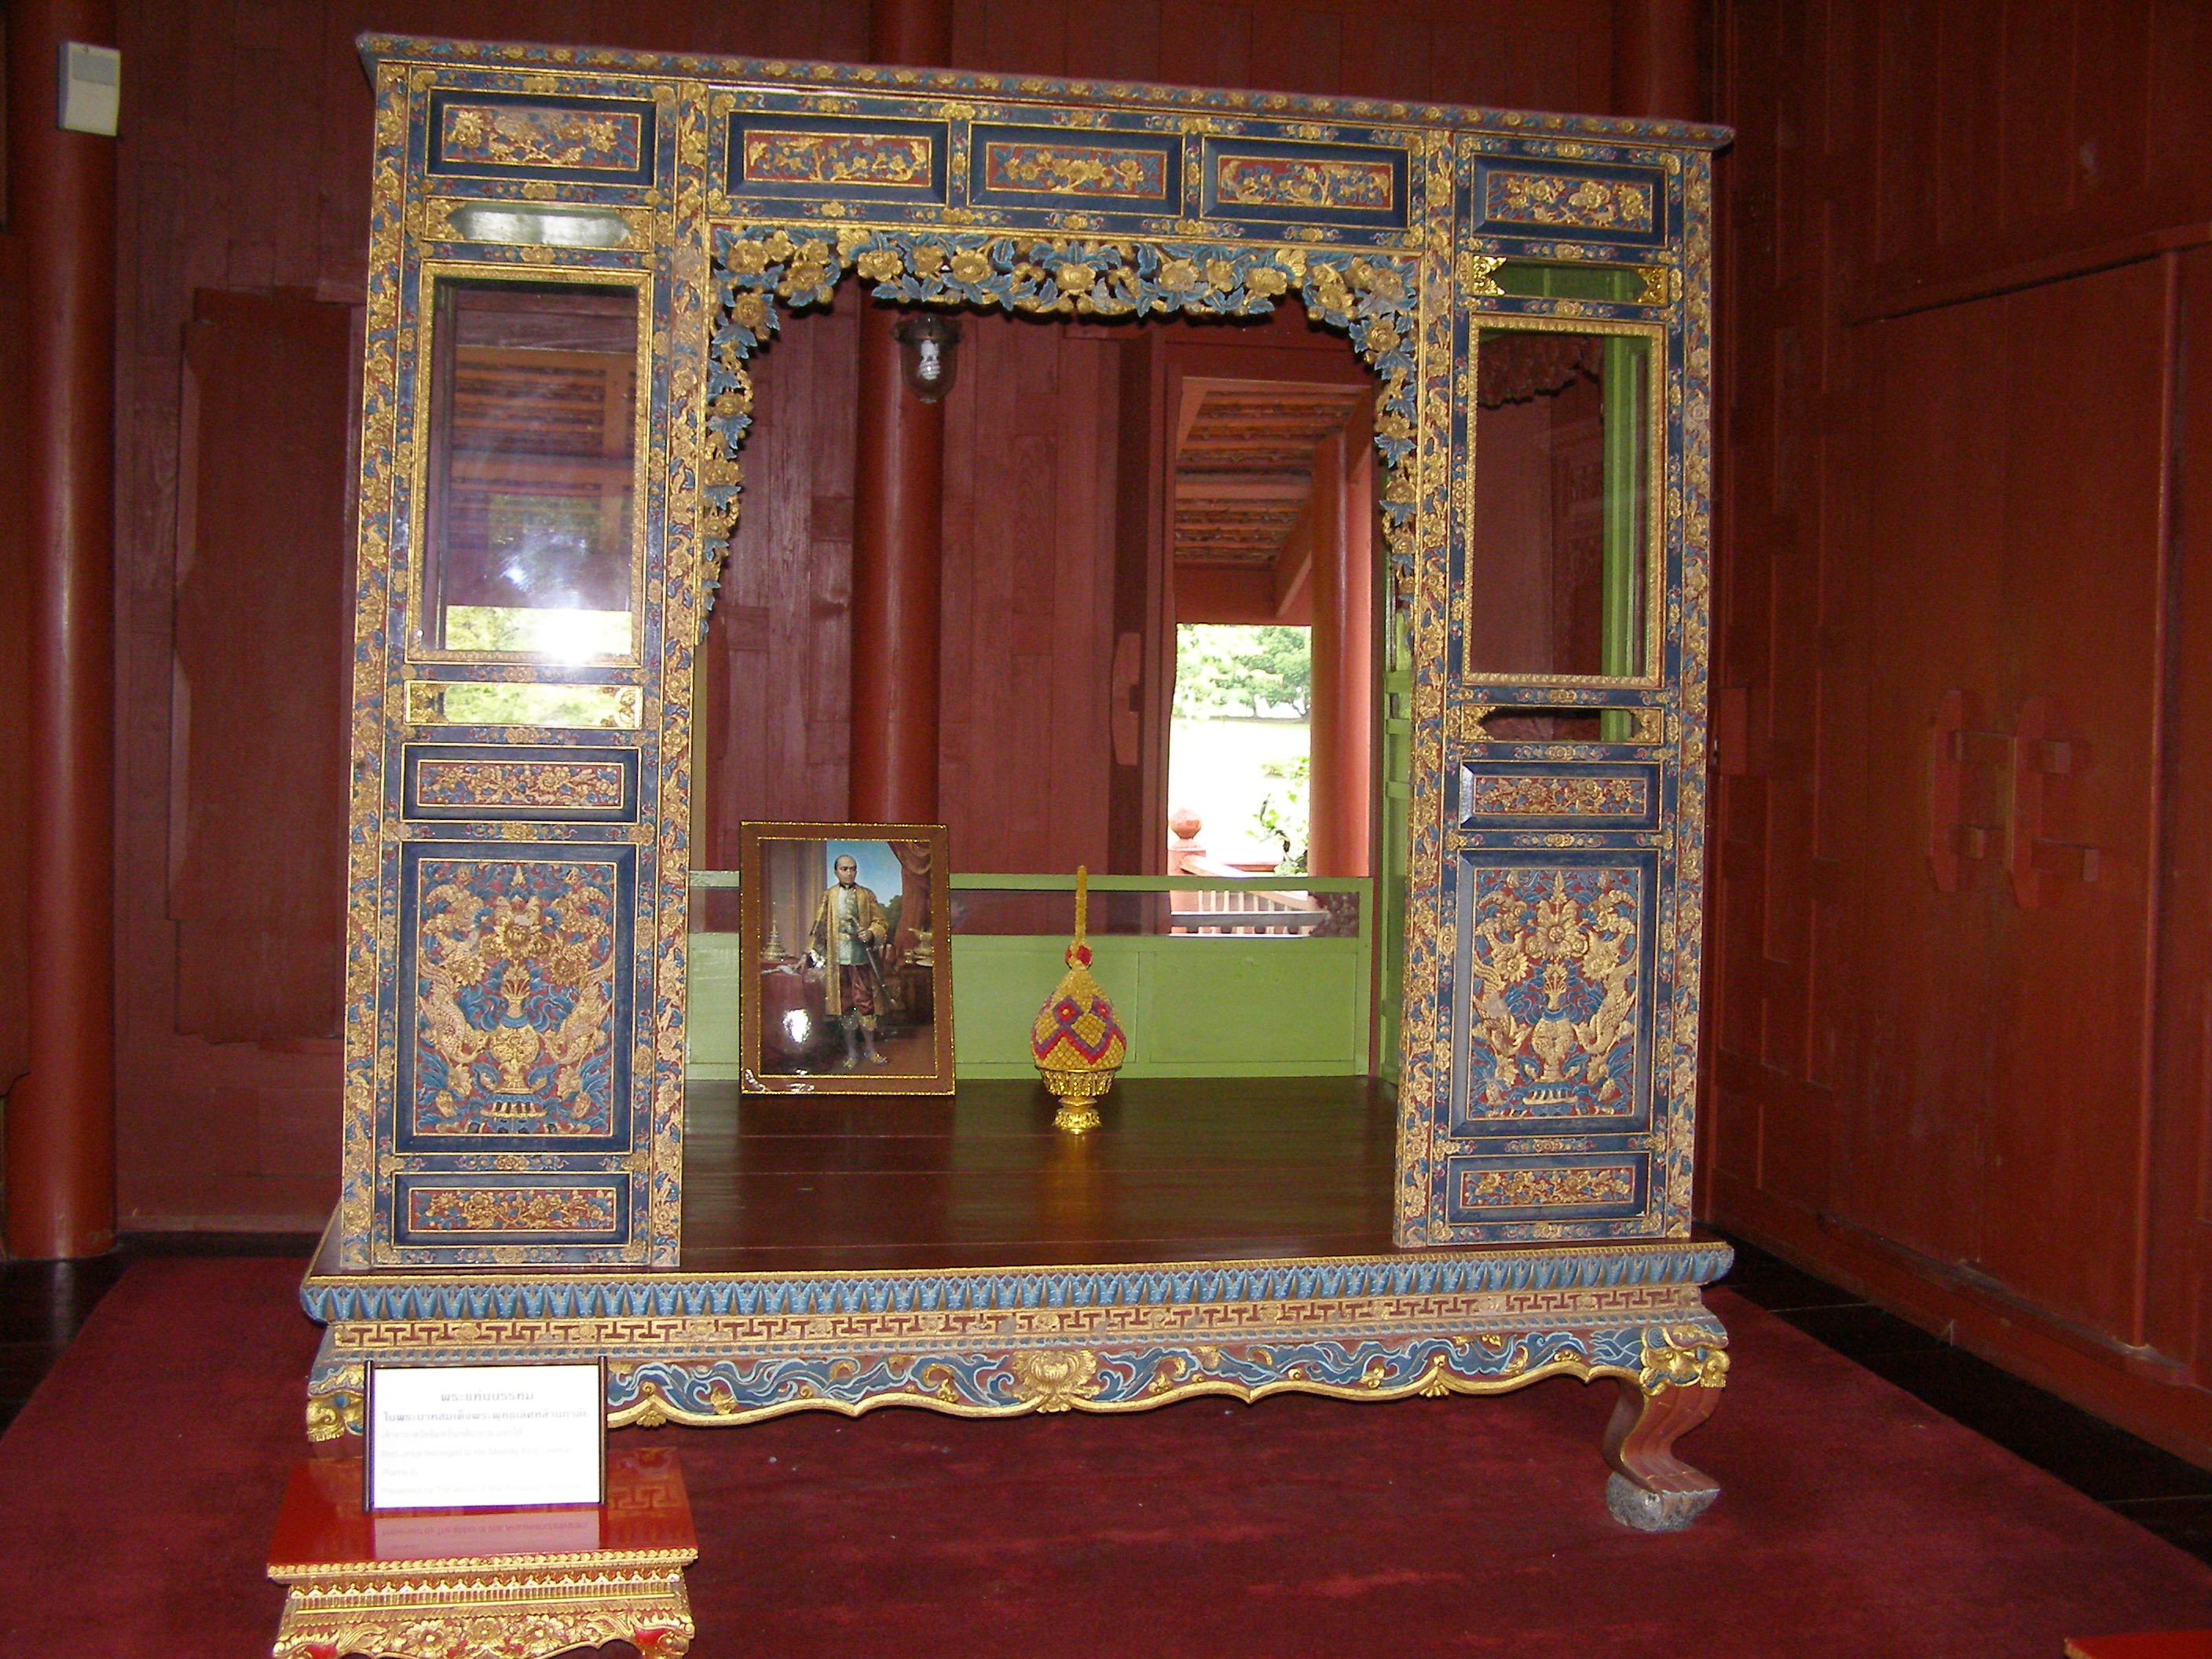 tak toto je kralovska postel, spaval v nej vraj kral rise Siam [Thajsko] Rama V - Chulalongkorn.Foto je z ostrova Krabi